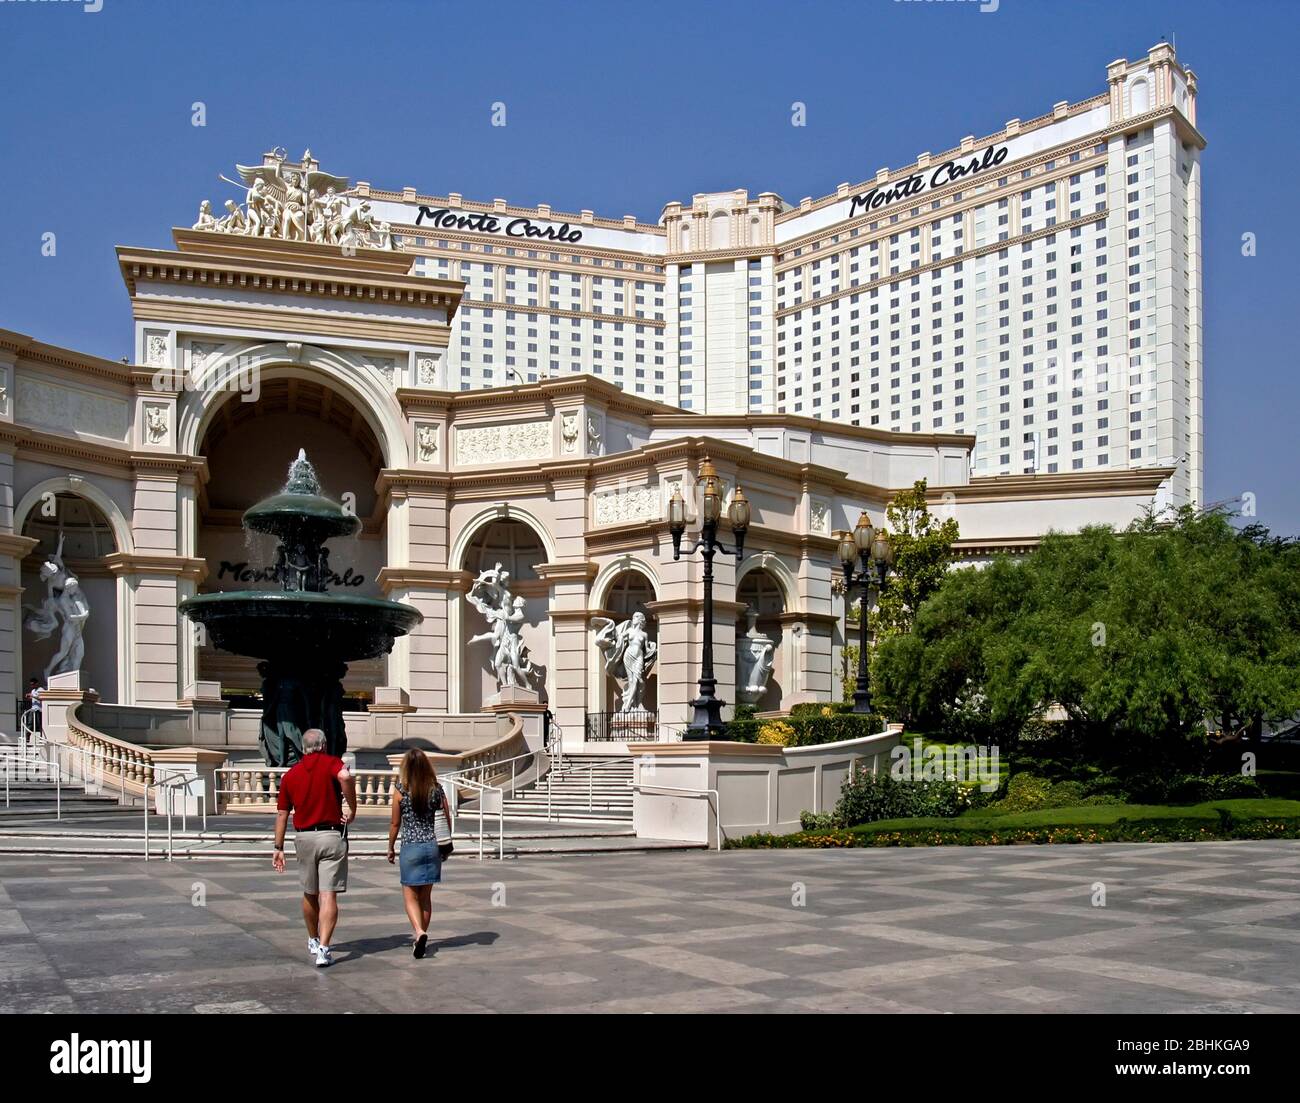 Monte Carlo Hotel e Casino di Las Vegas, Nevada, STATI UNITI D'AMERICA Foto Stock